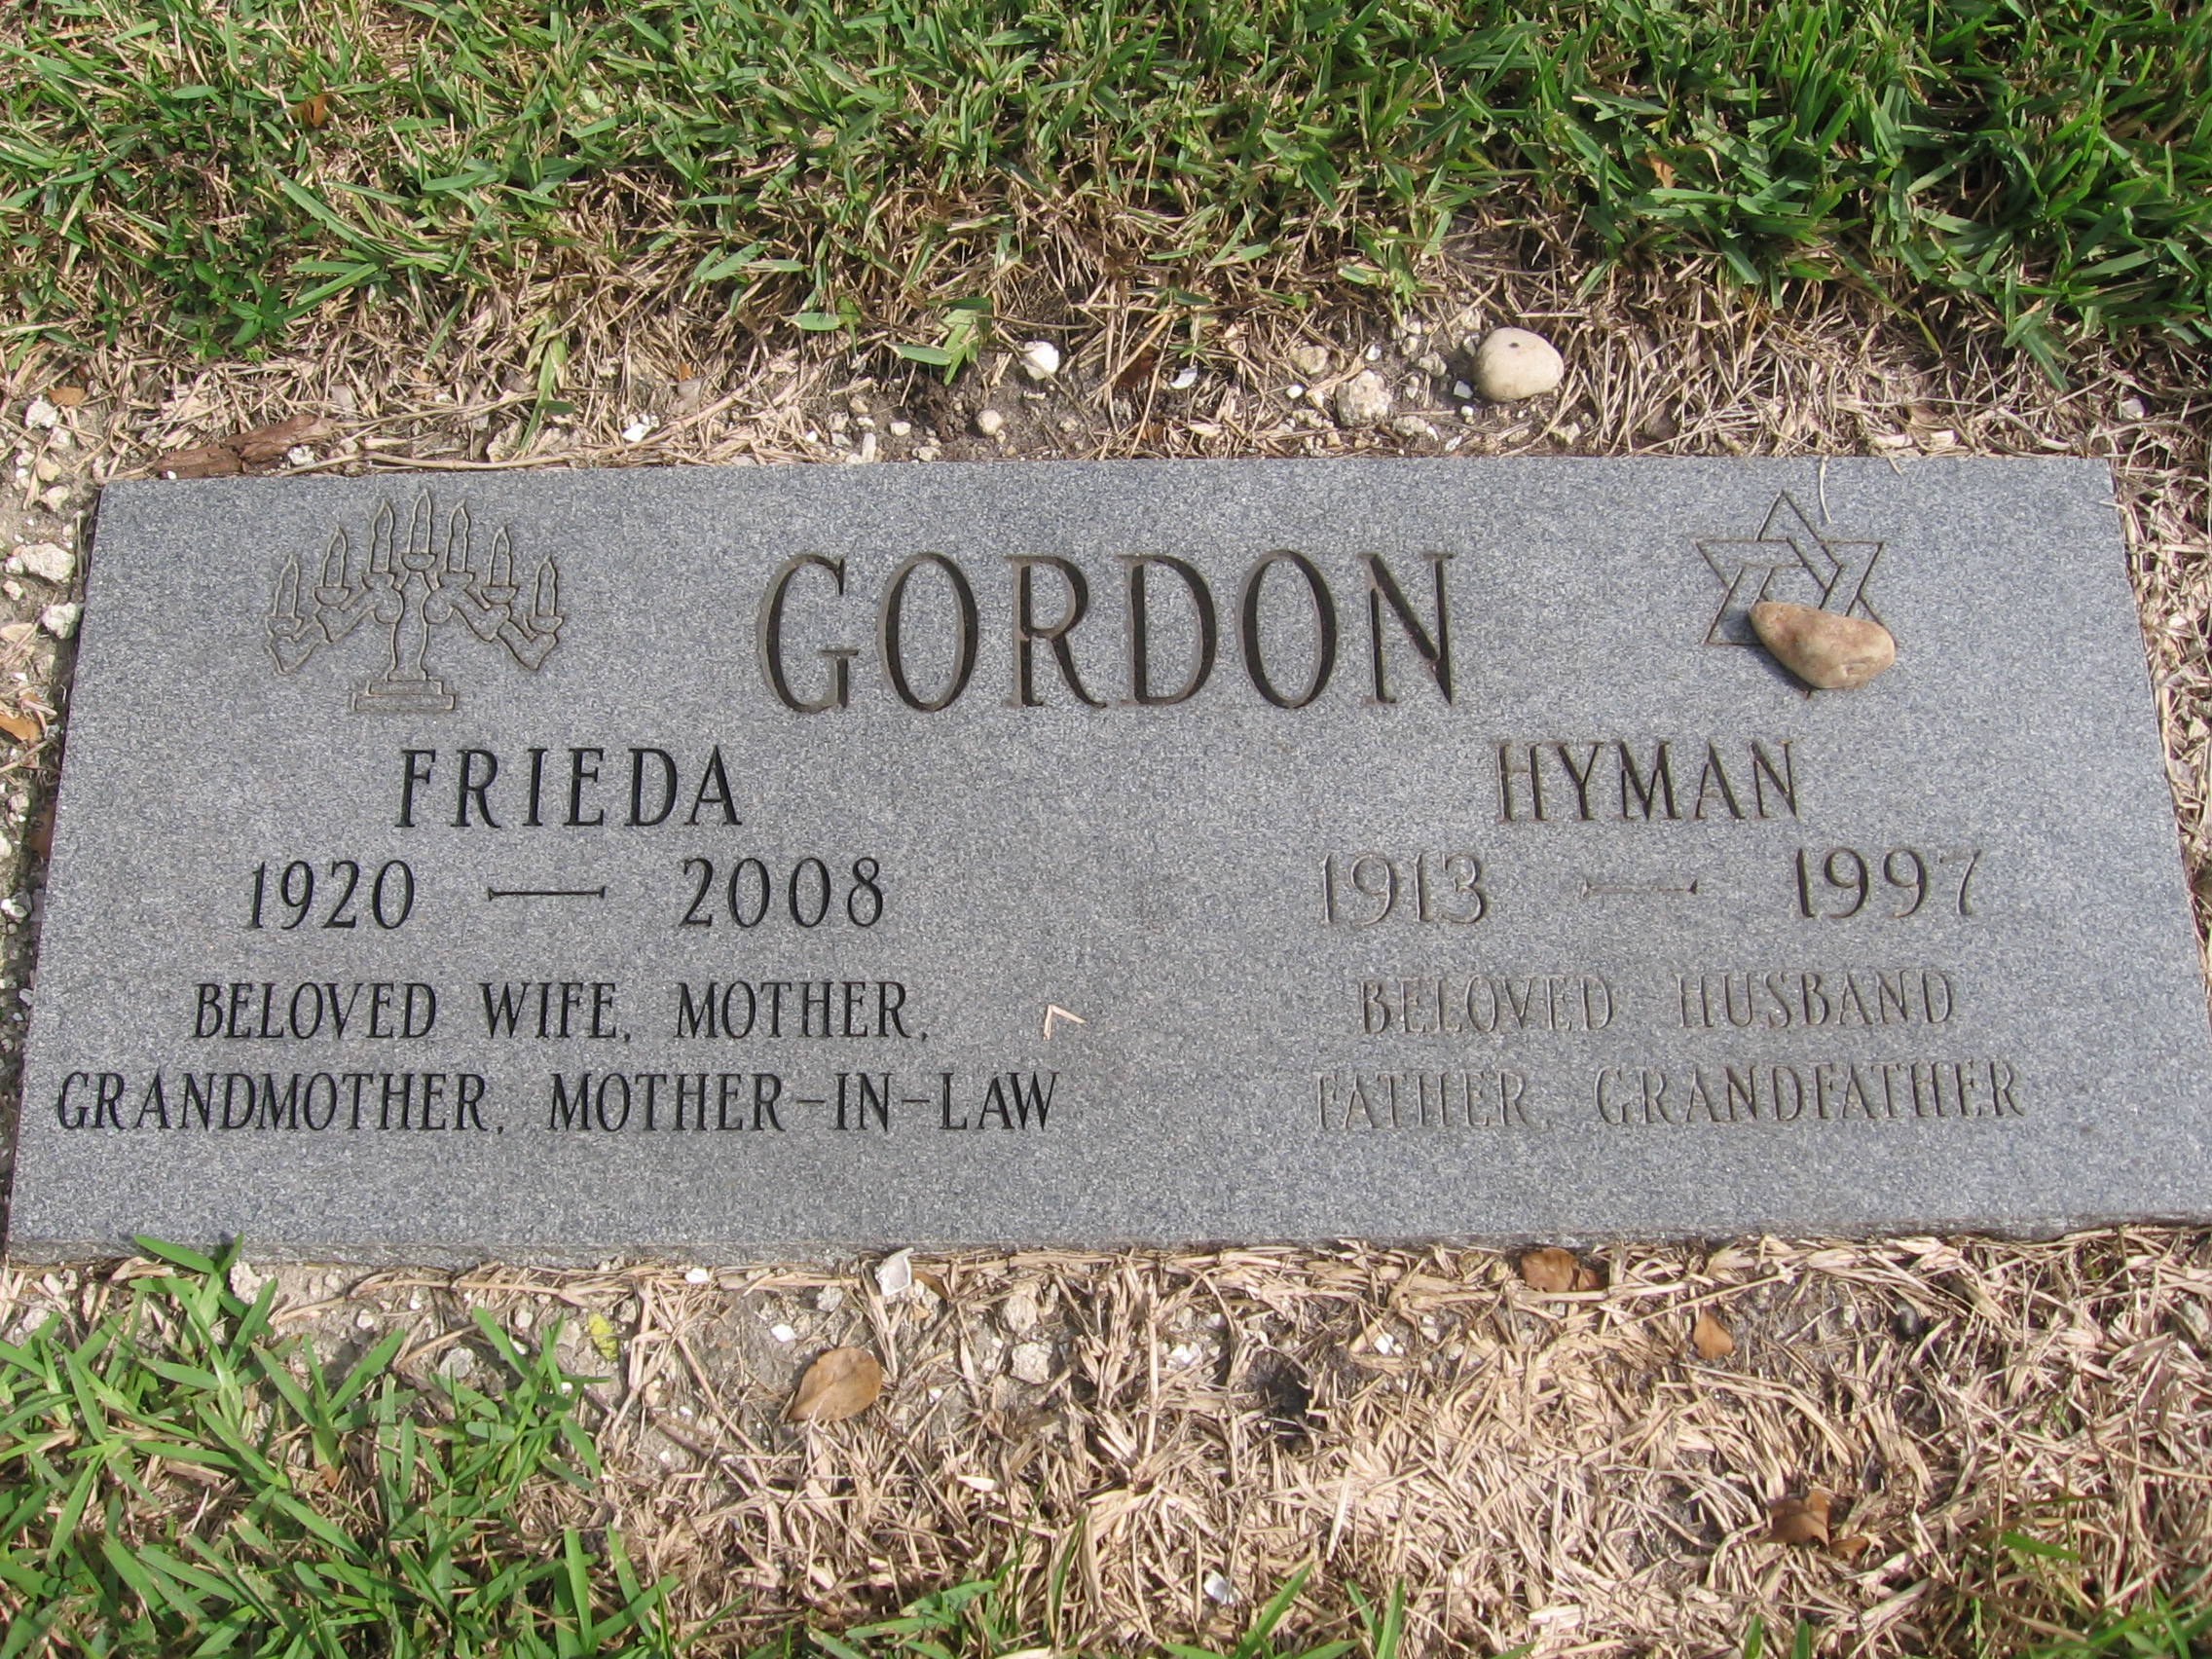 Hyman Gordon